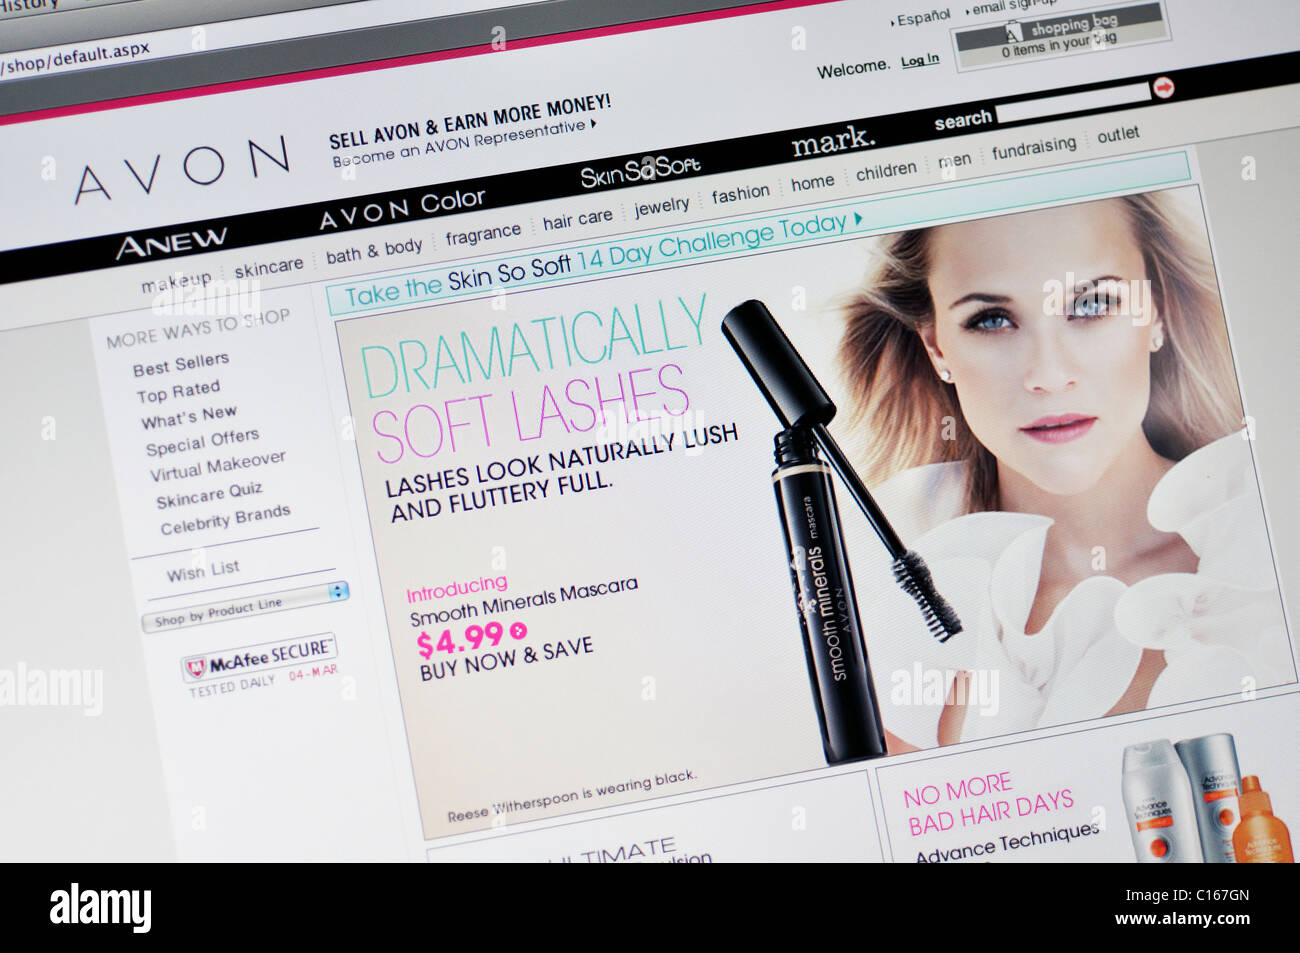 Avon Beauty Arabia, Official Website